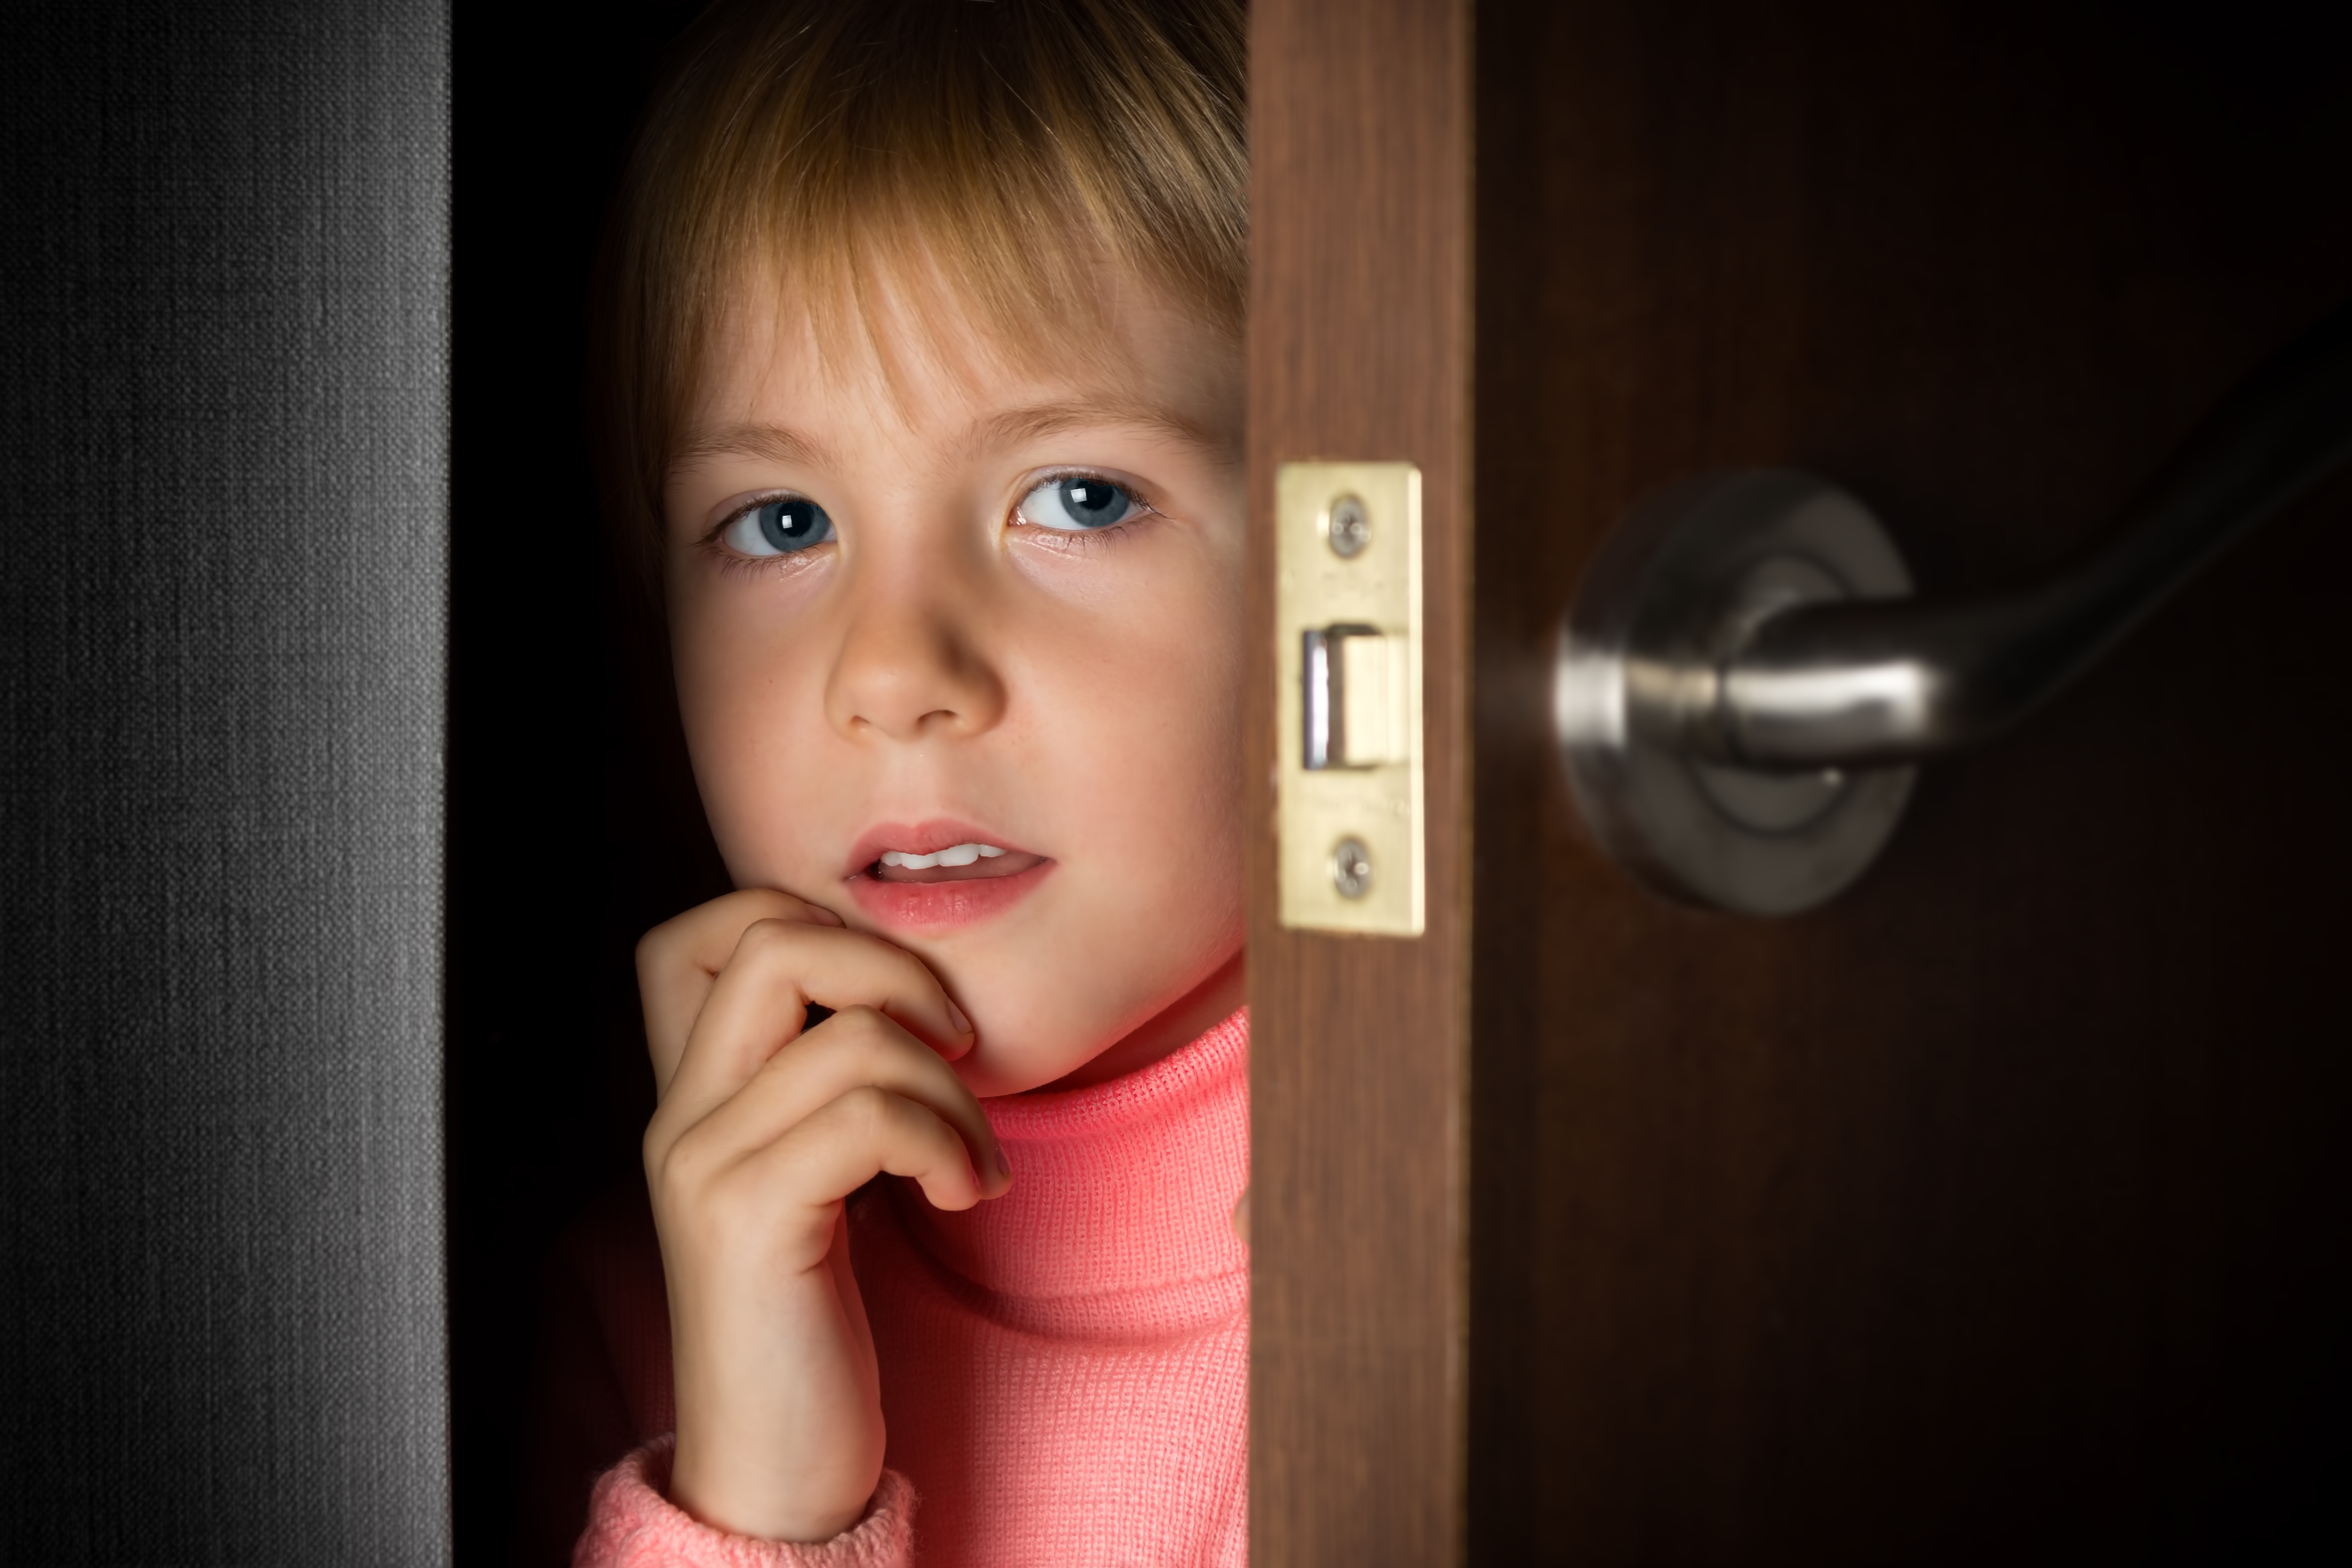 A little girl peeking through a door | Source: Shutterstock